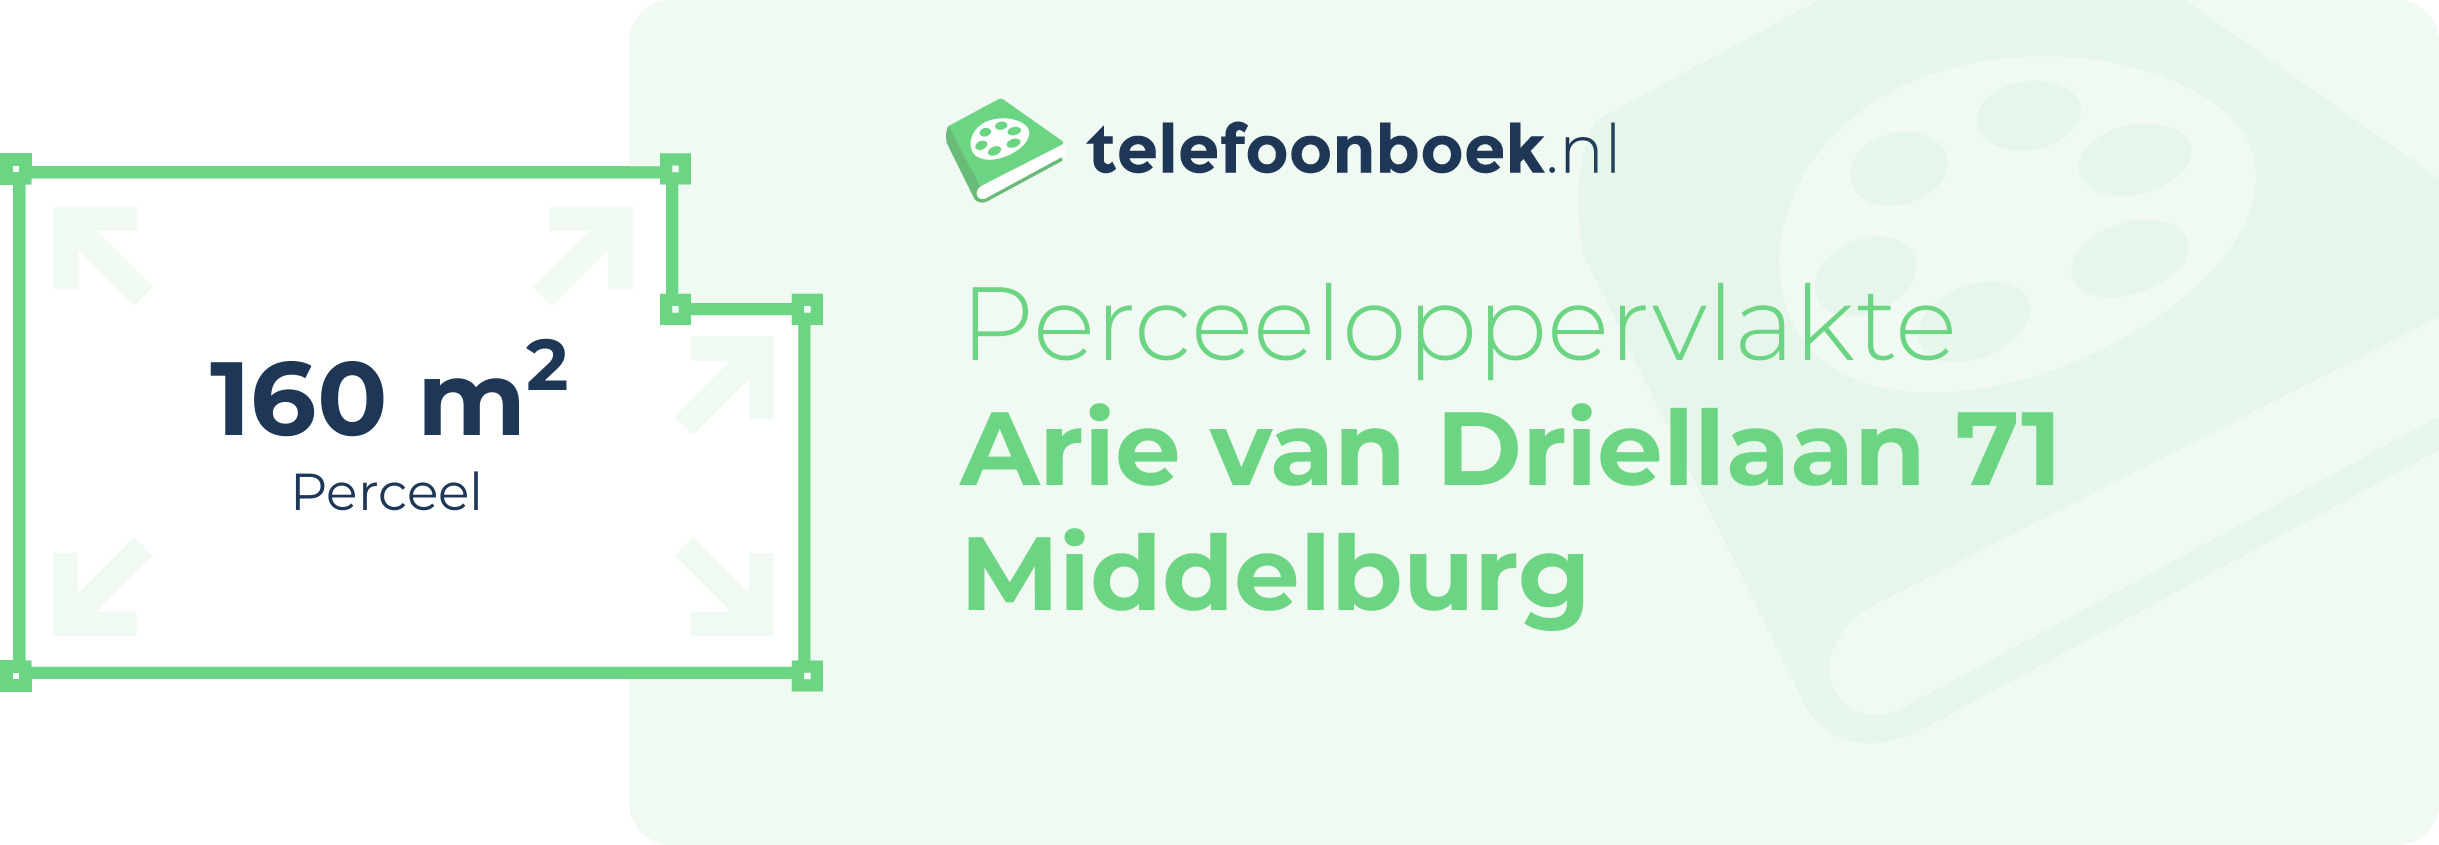 Perceeloppervlakte Arie Van Driellaan 71 Middelburg